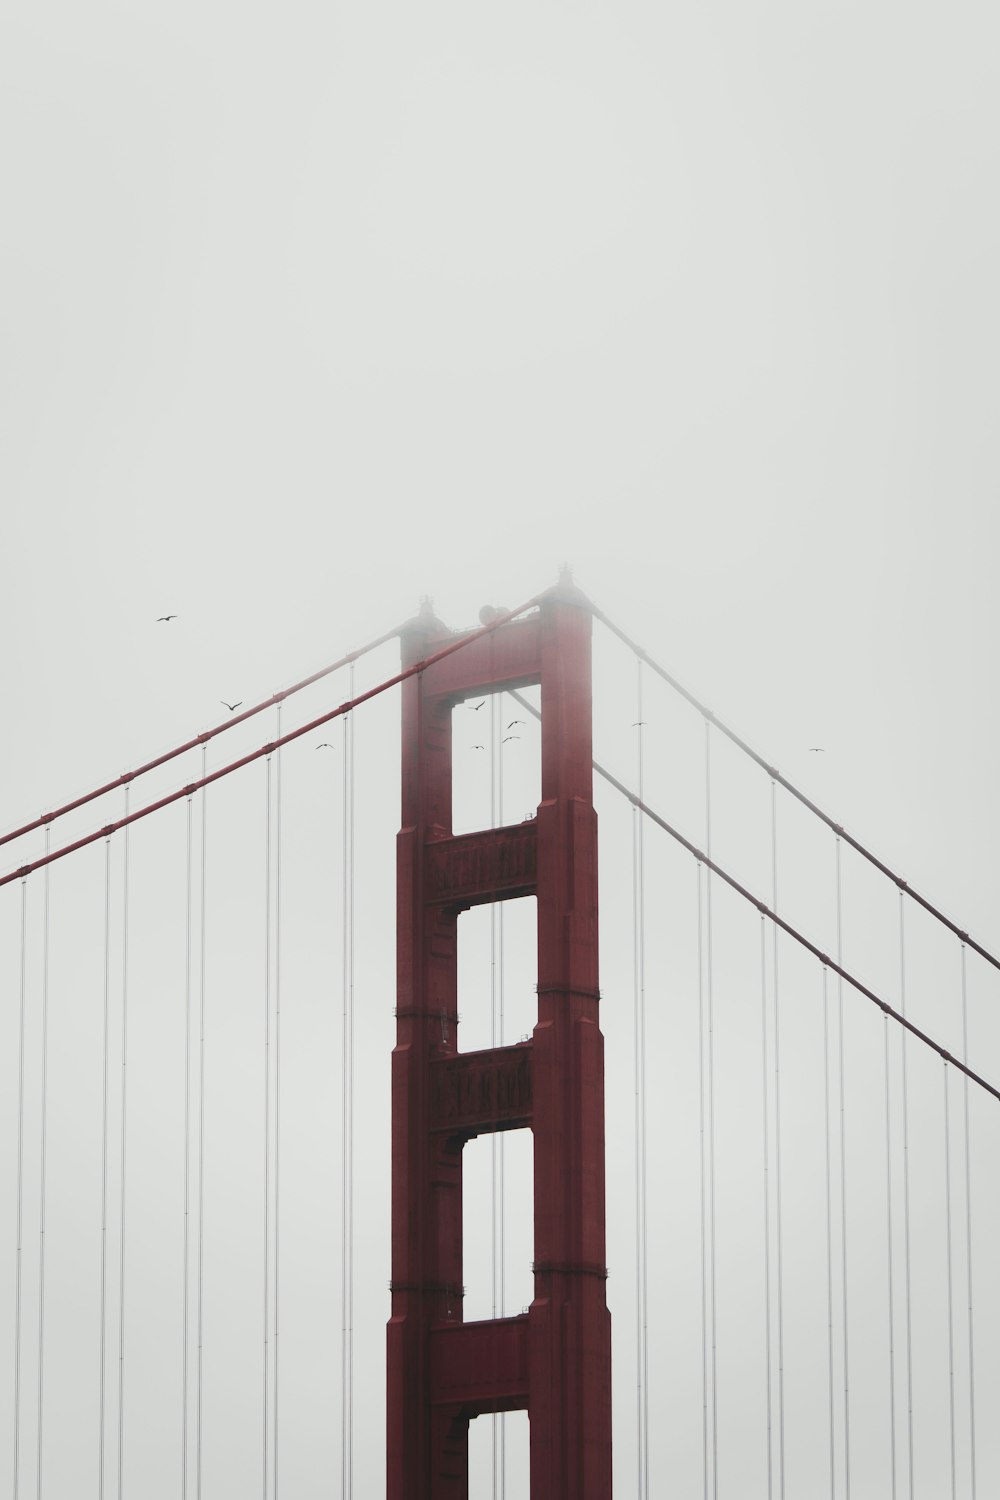 Puente Golden Gate en fotografía en escala de grises